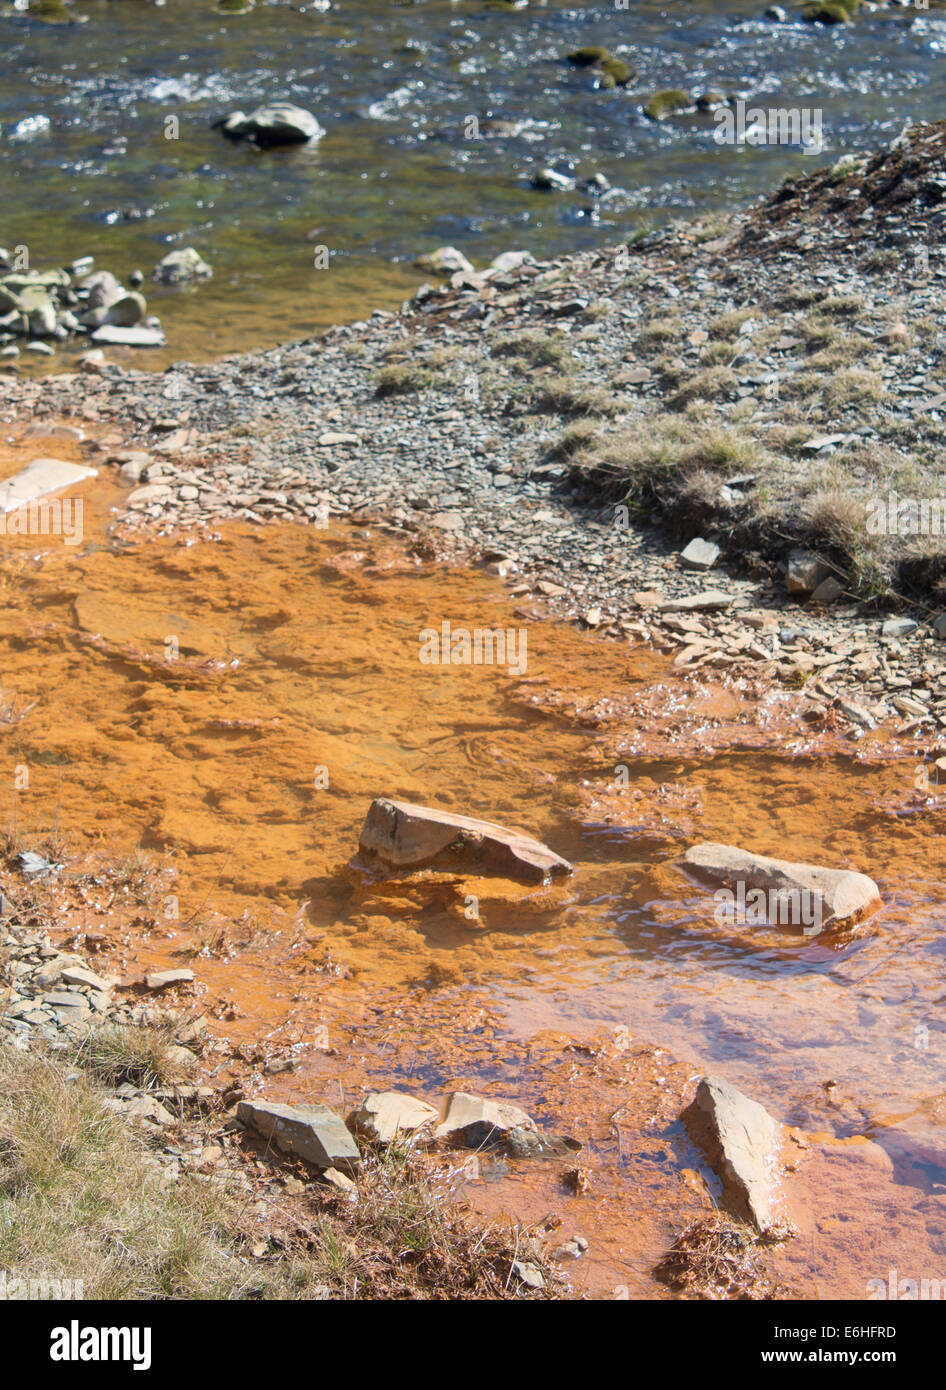 La pollution de l'eau contaminée qui s'de stream de mine de plomb abandonnée dans une rivière avec de l'eau propre Cwmystwyth Mid Wales UK Banque D'Images